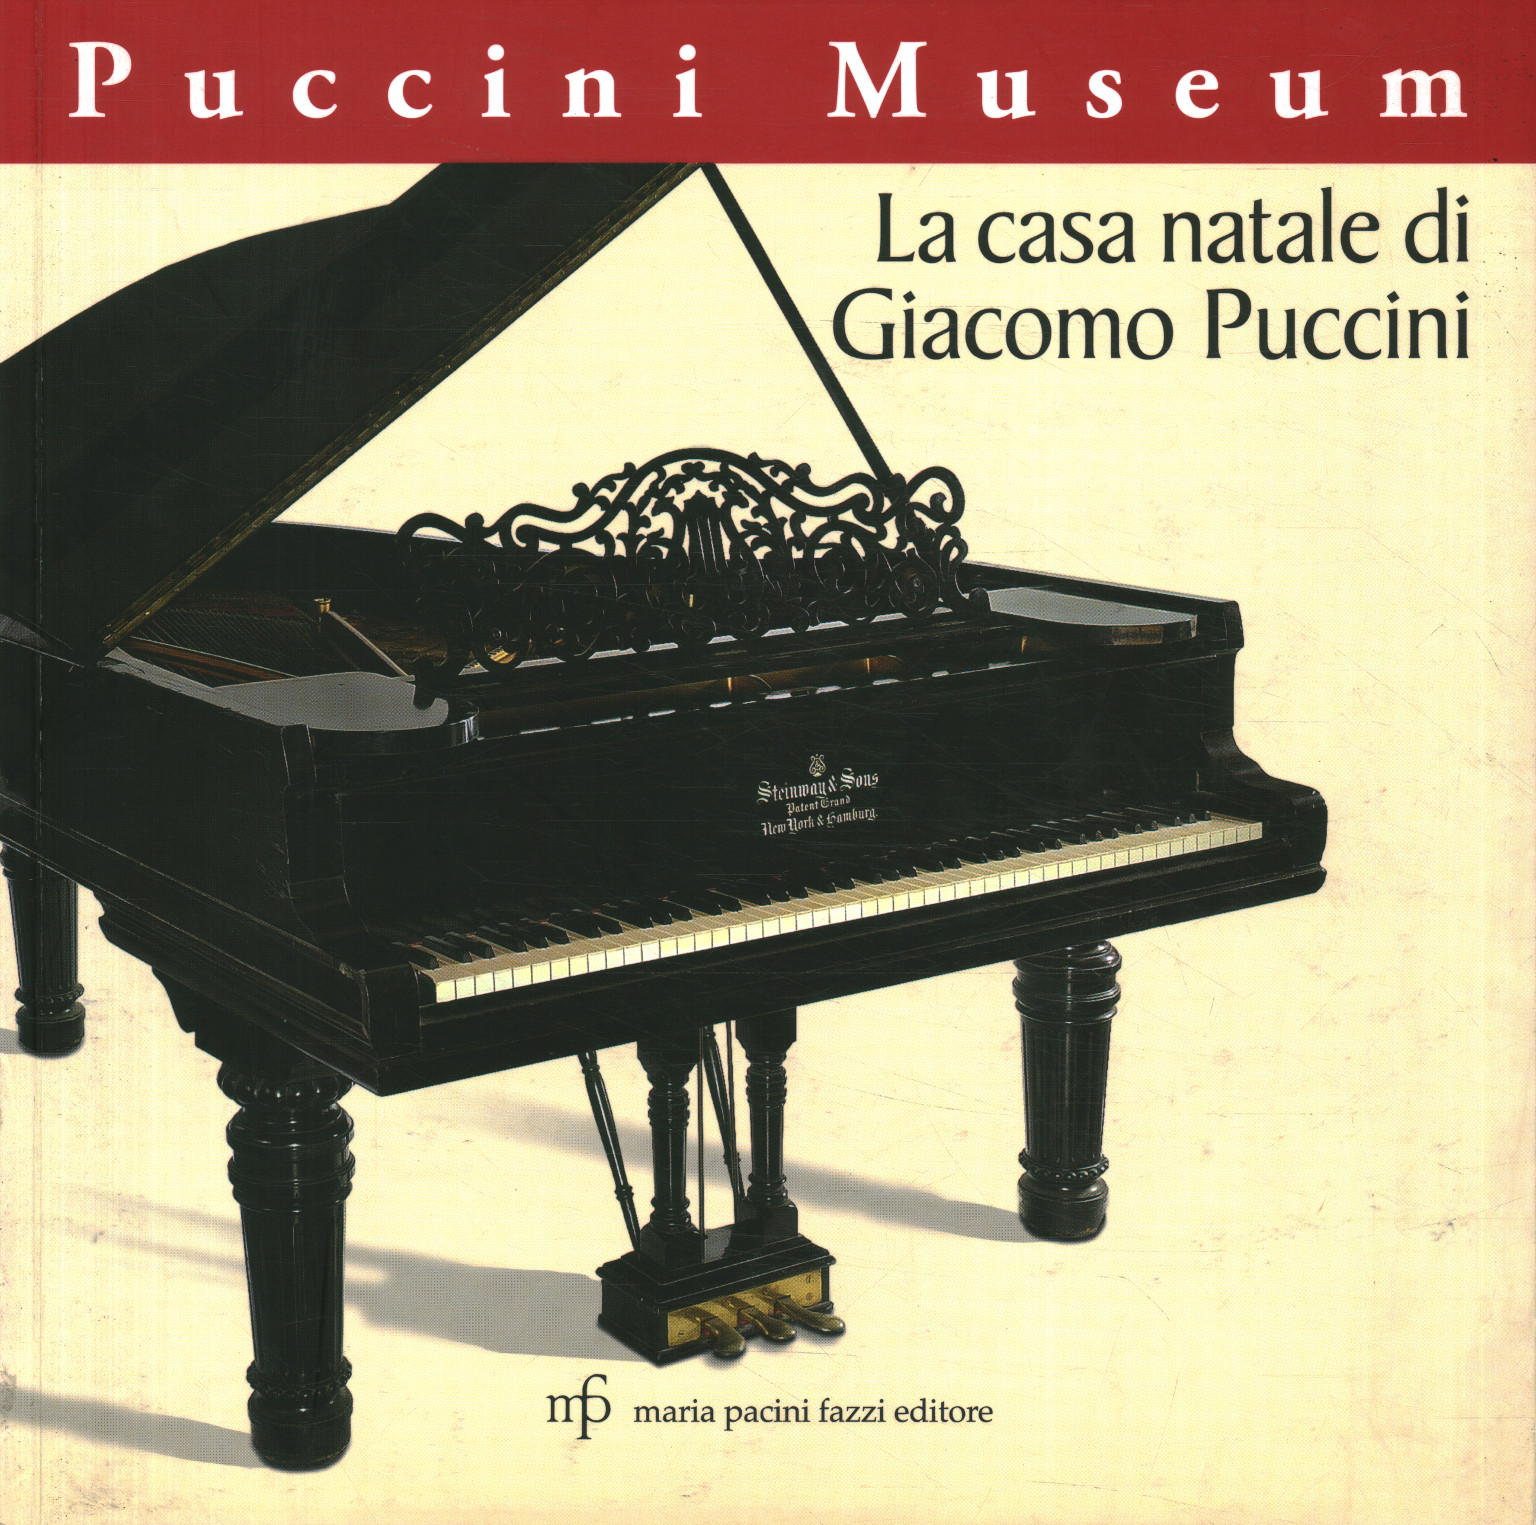 Museo Puccini. lugar de nacimiento de giac